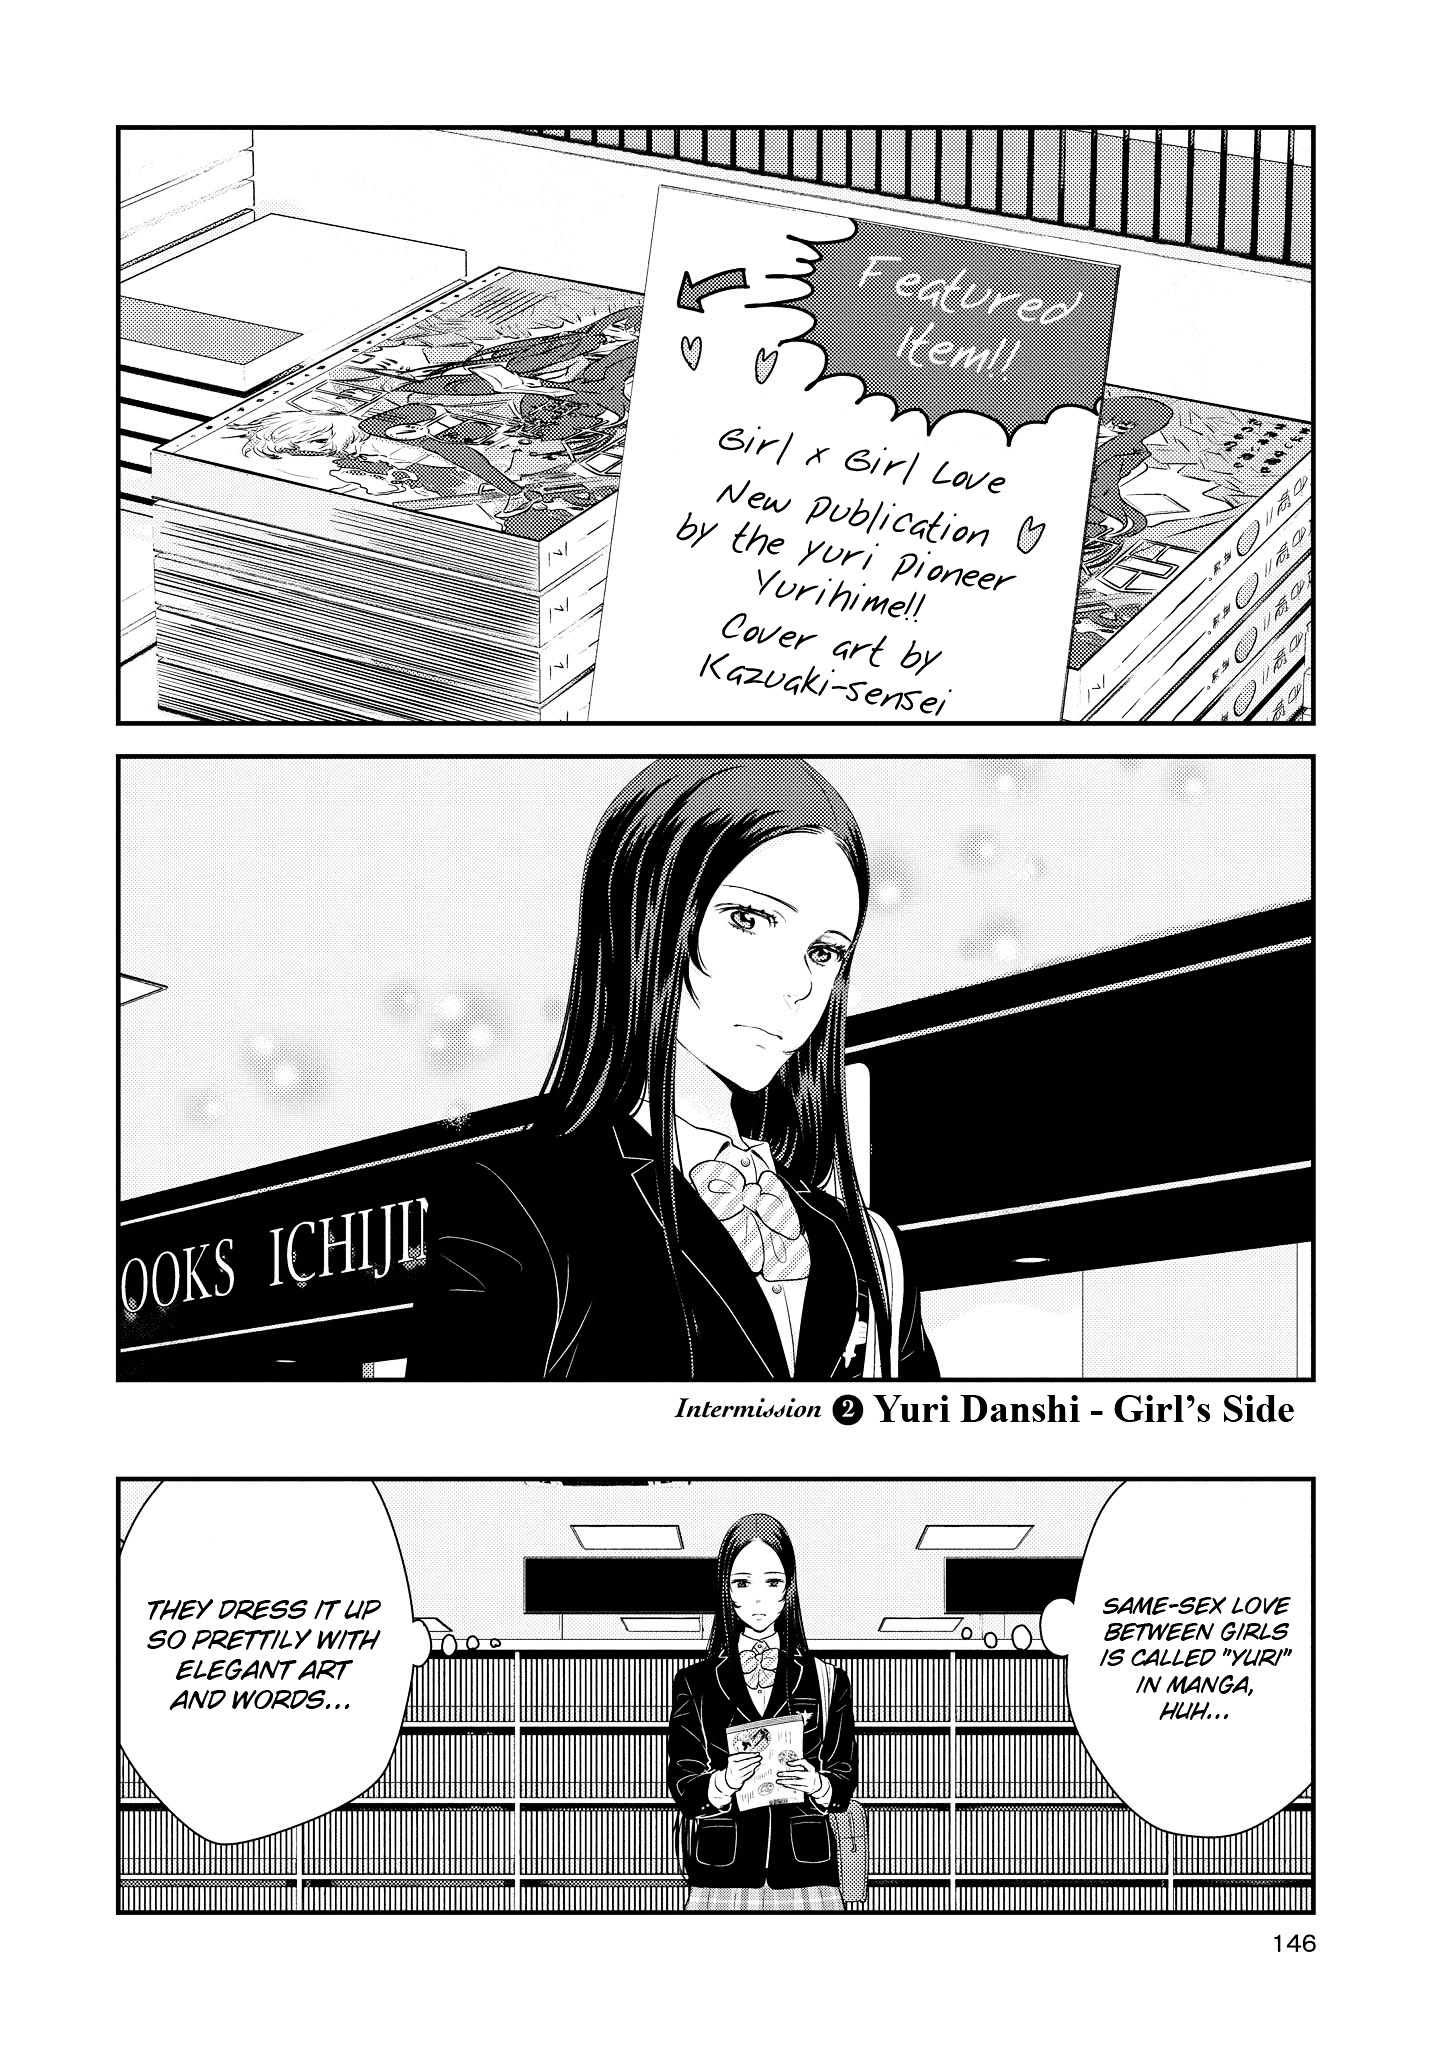 Yuri Danshi - chapter 4.2 - #2